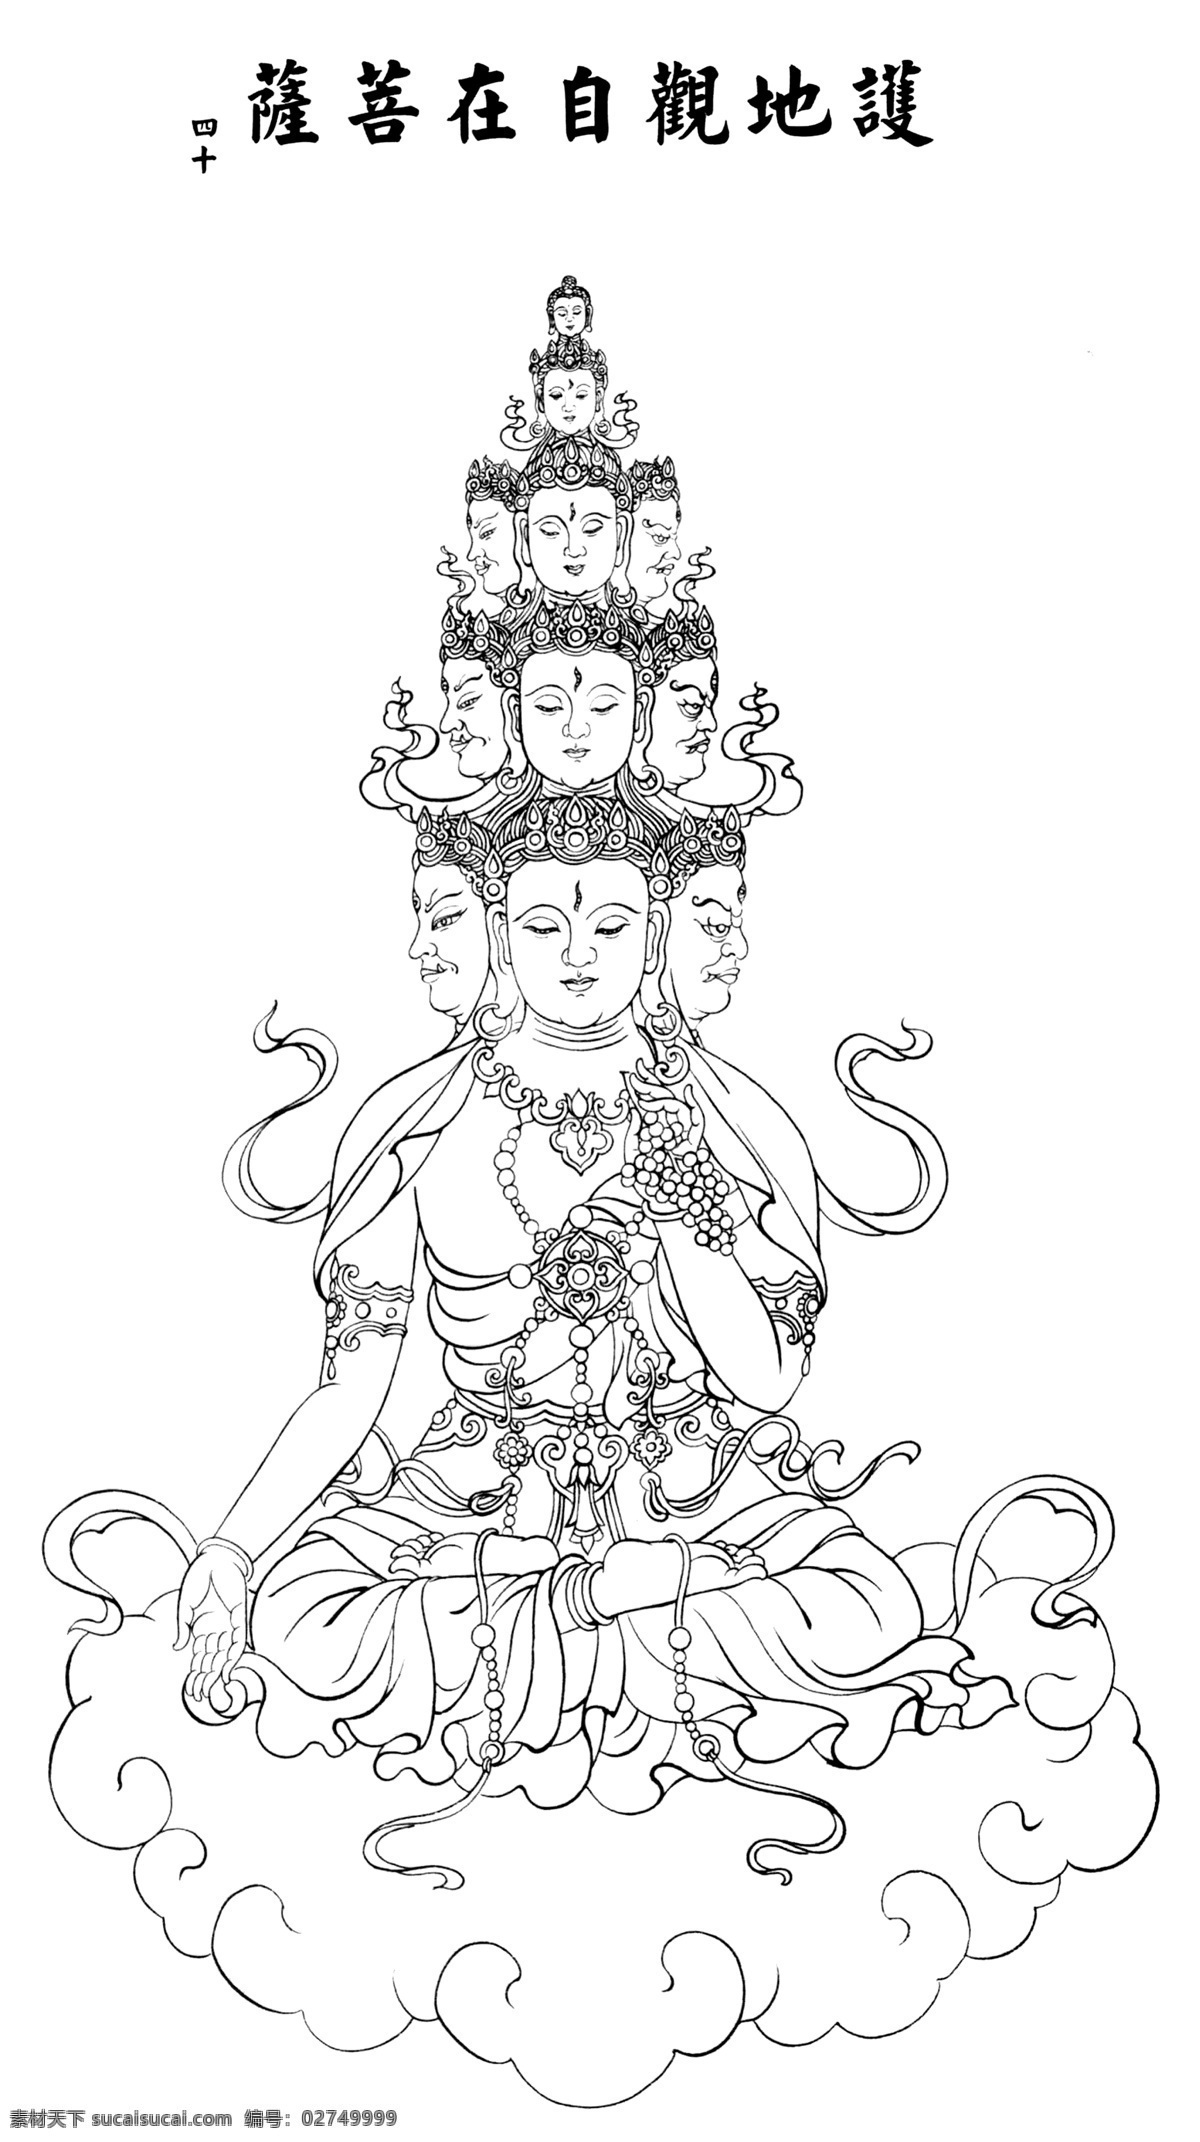 超大 高清 人物 白描 观音 大图 传统文化 佛 佛教 佛像 工笔 国画 线描 绘画书法 文化艺术